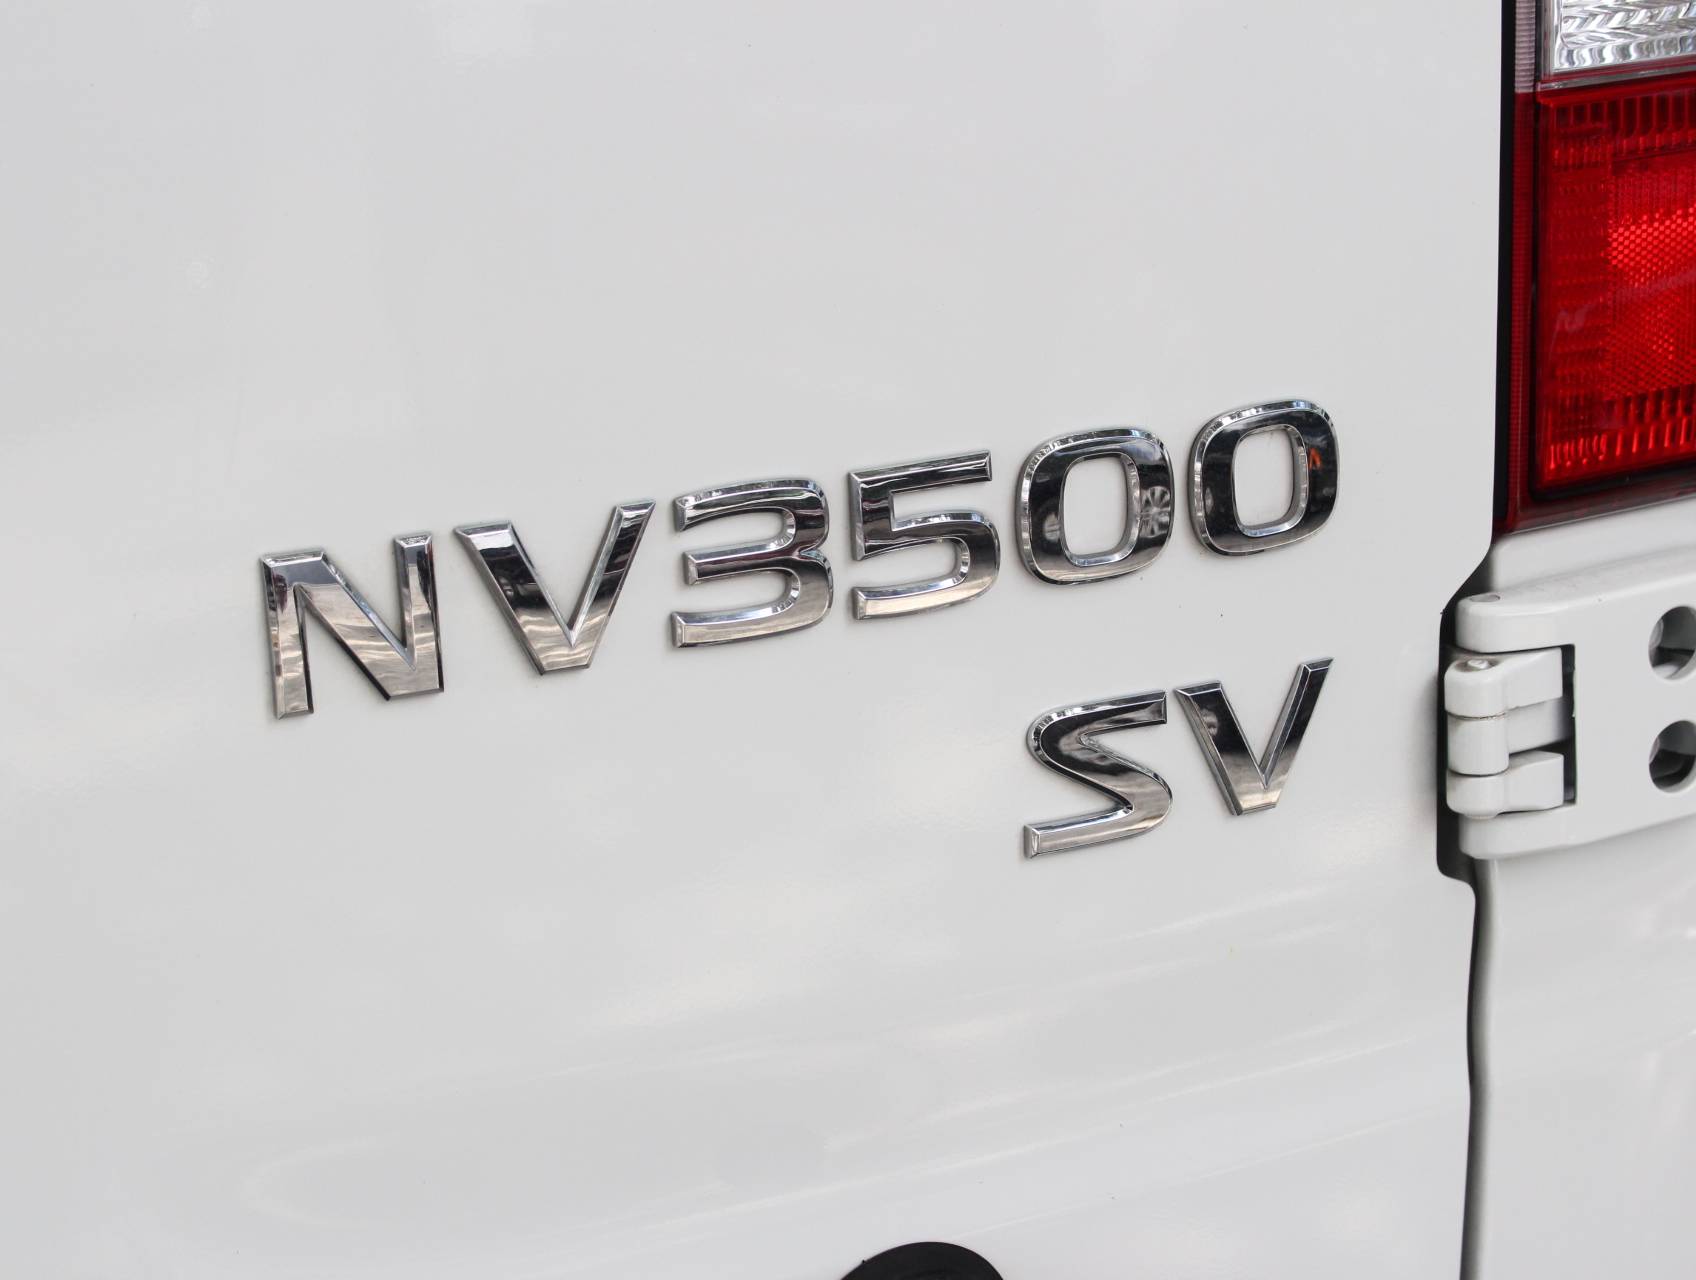 Florida Fine Cars - Used NISSAN NV3500 2017 WEST PALM Sv Passenger Van